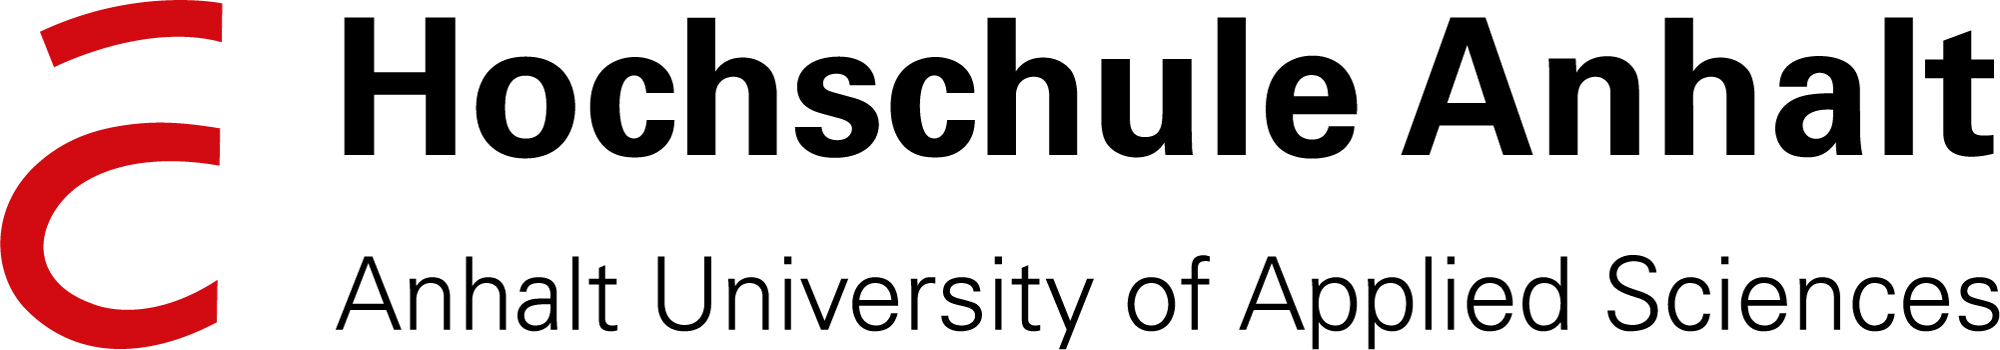 Logo: Hochschule Anhalt